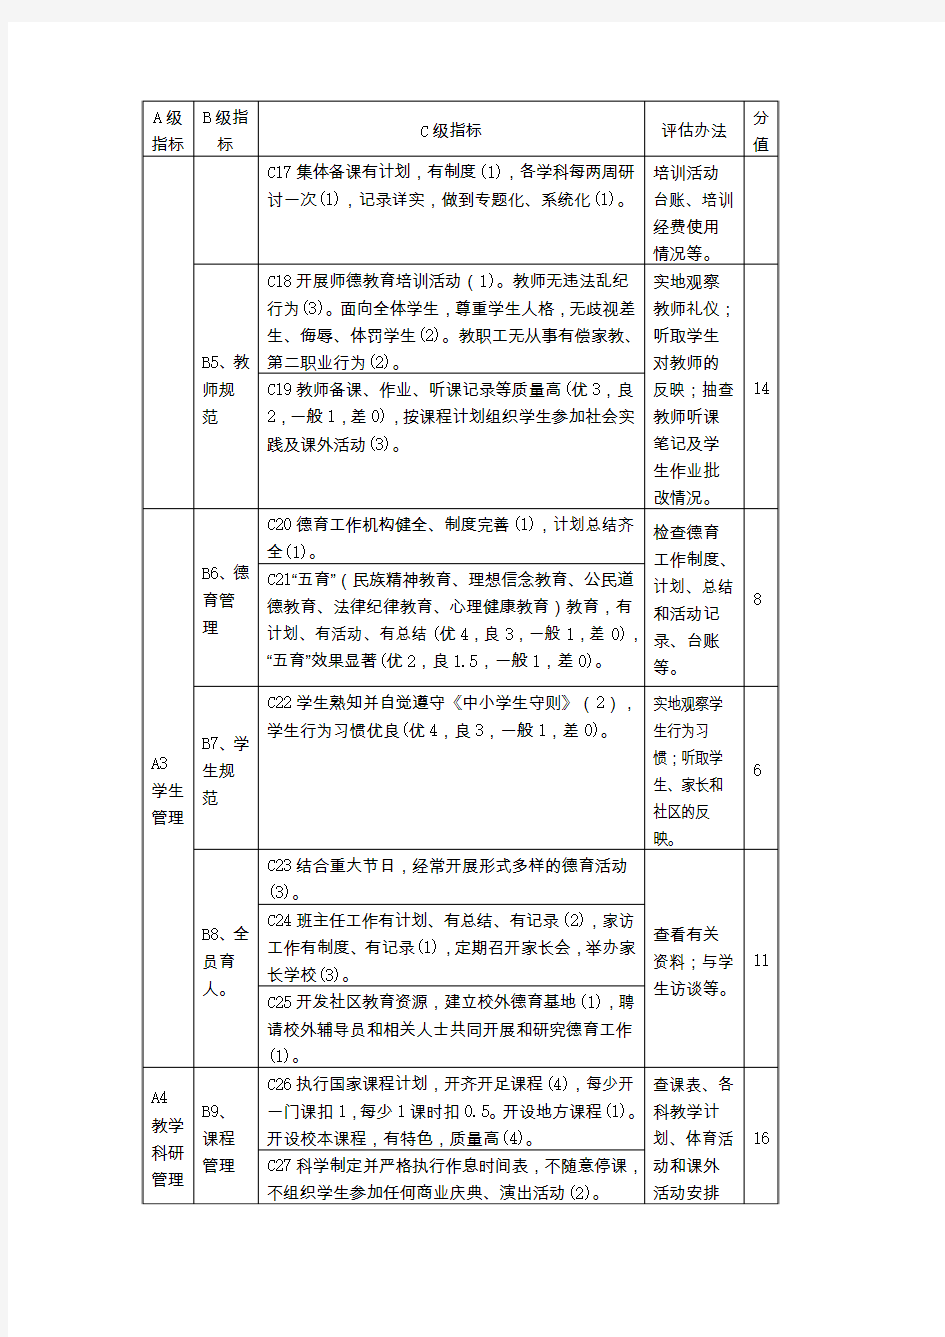 《江苏省中小学管理规范》评估细则